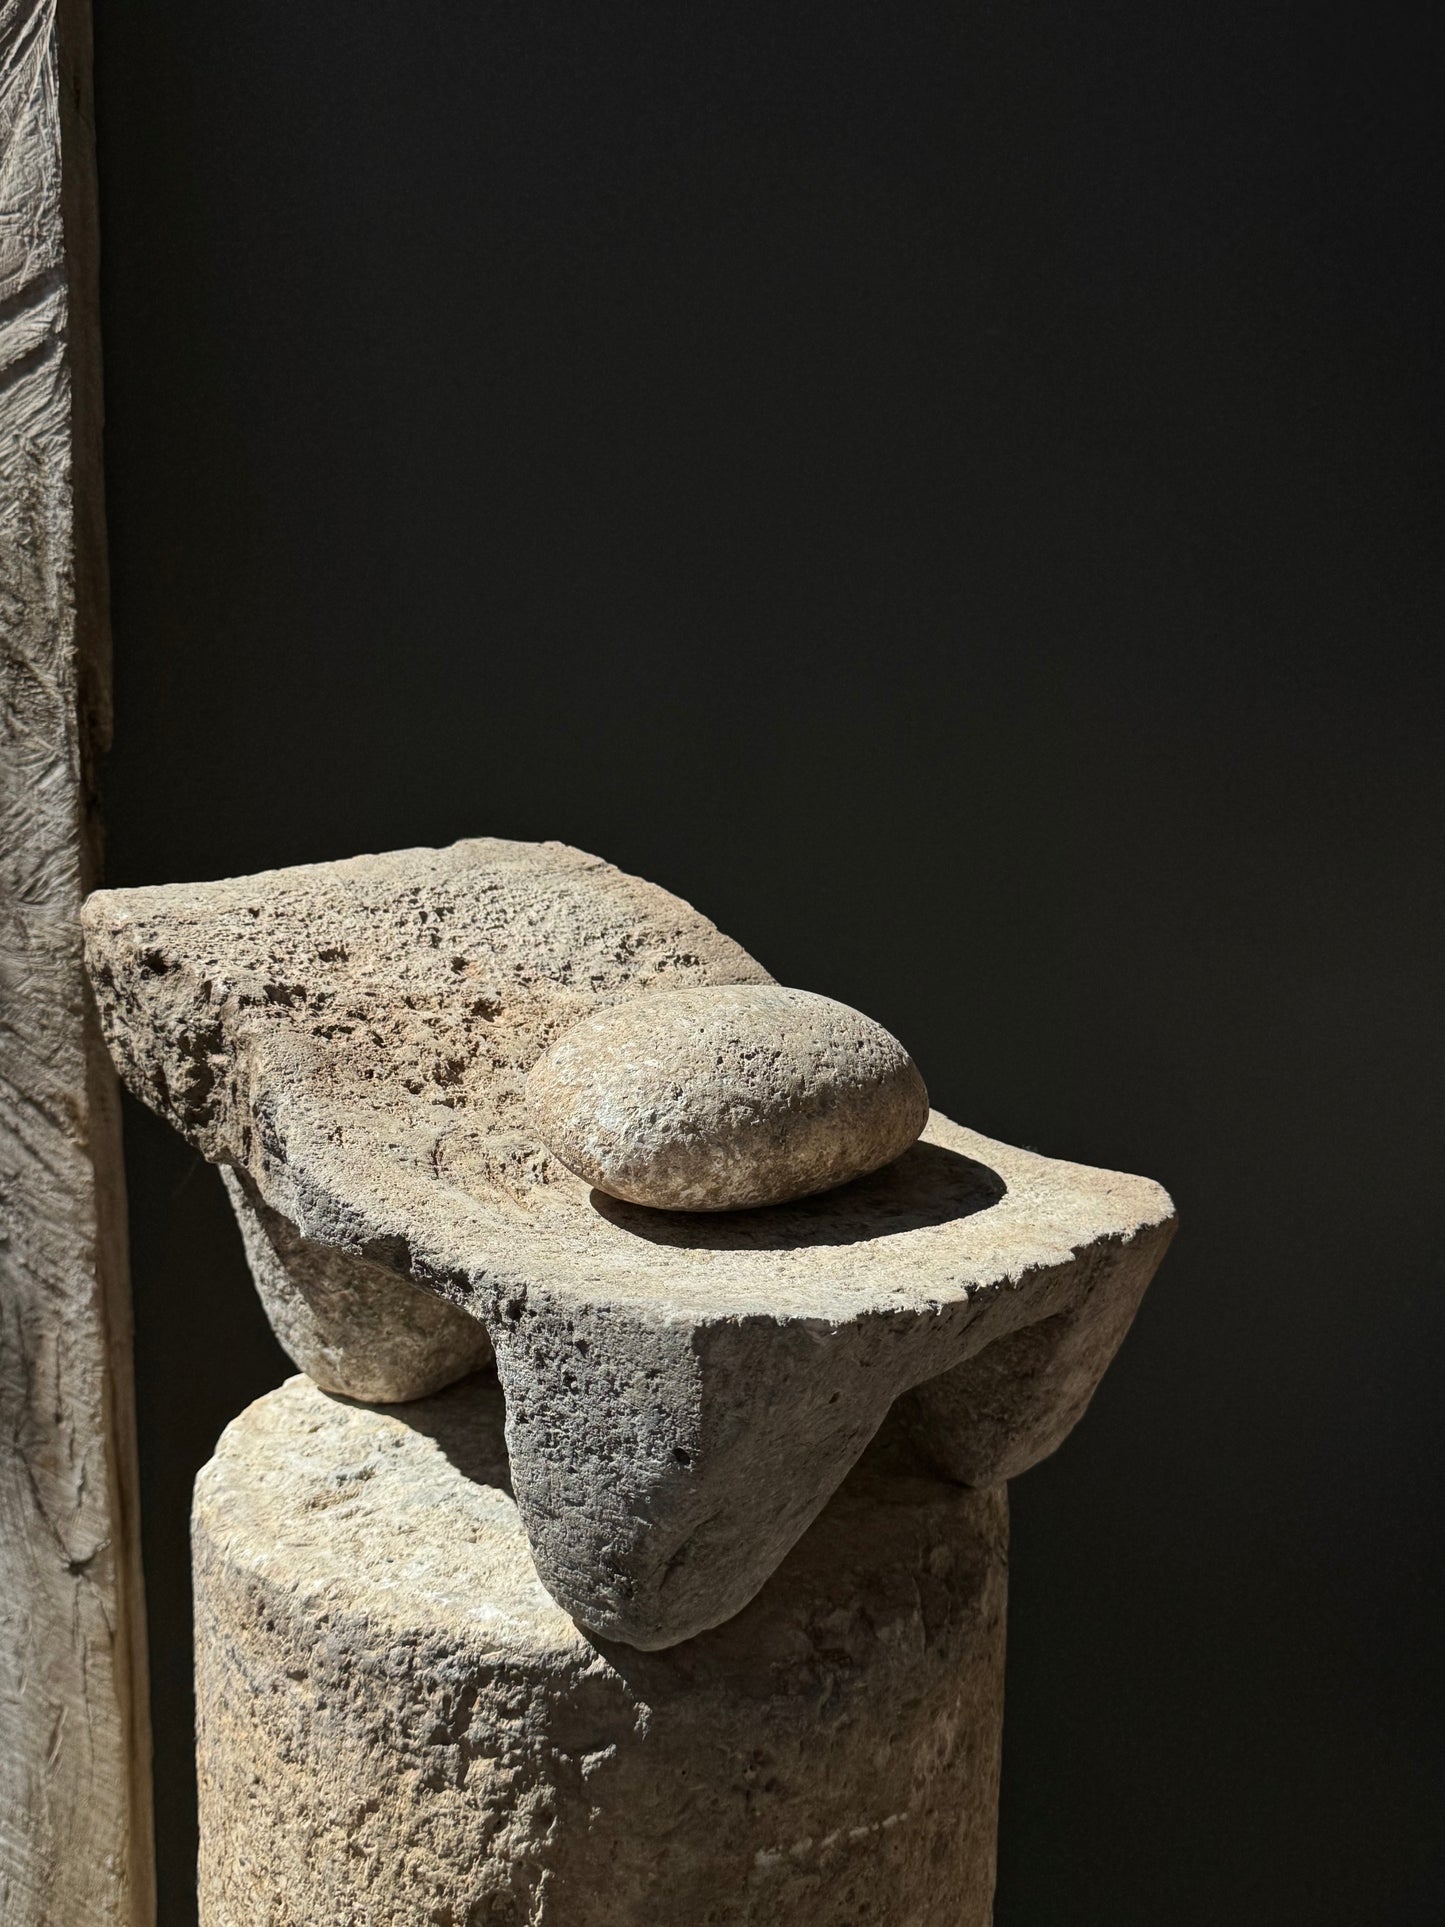 Stone Mortar From Yucatán/ Metate Antiguo De Yucatán